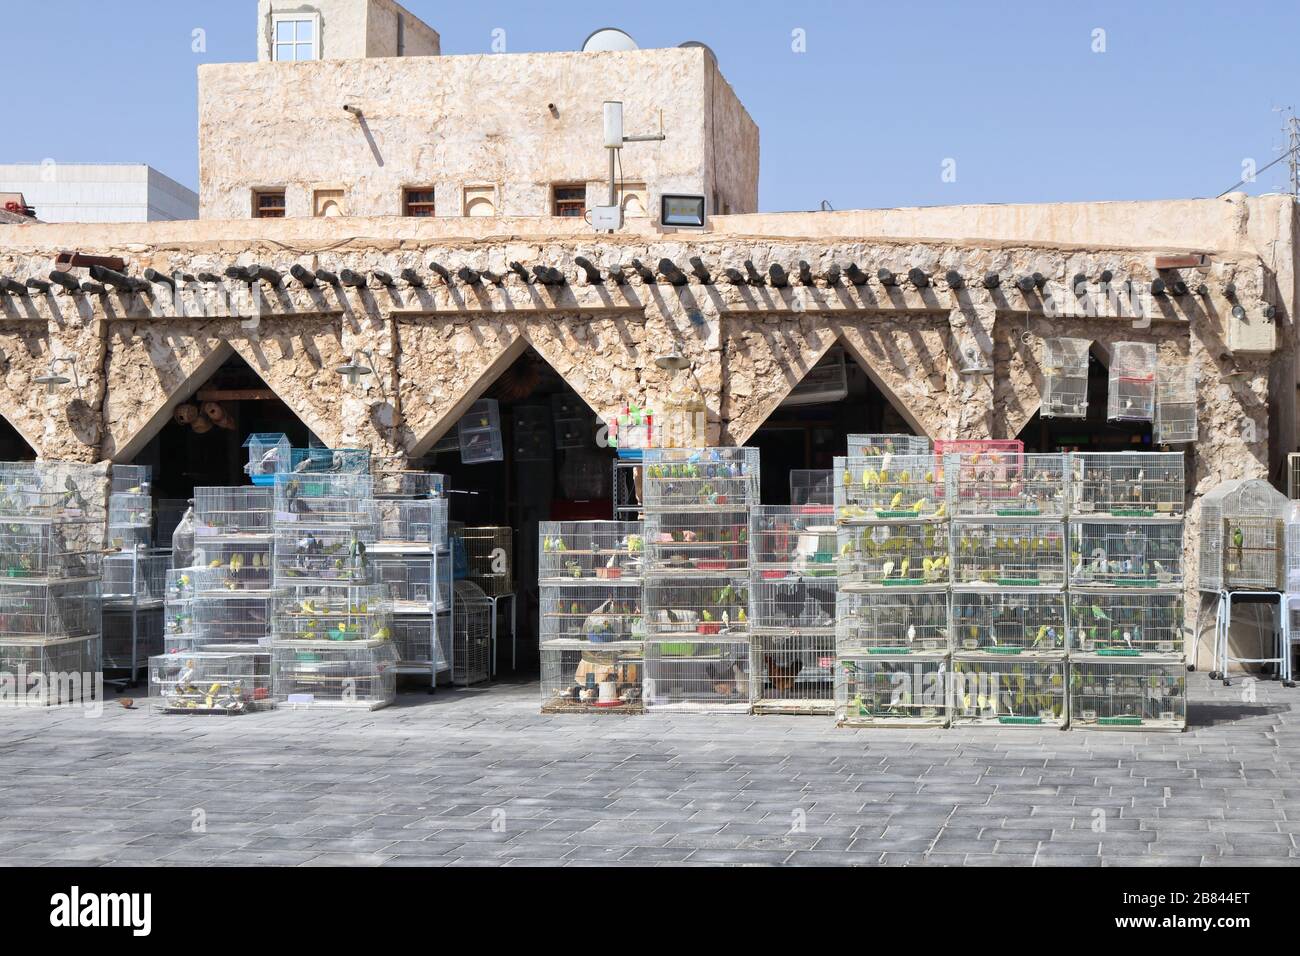 Una vista del mercato degli animali domestici in Souq Waqif dove si possono trovare tutti gli animali domestici compresi gli uccelli - Doha, Qatar Foto Stock